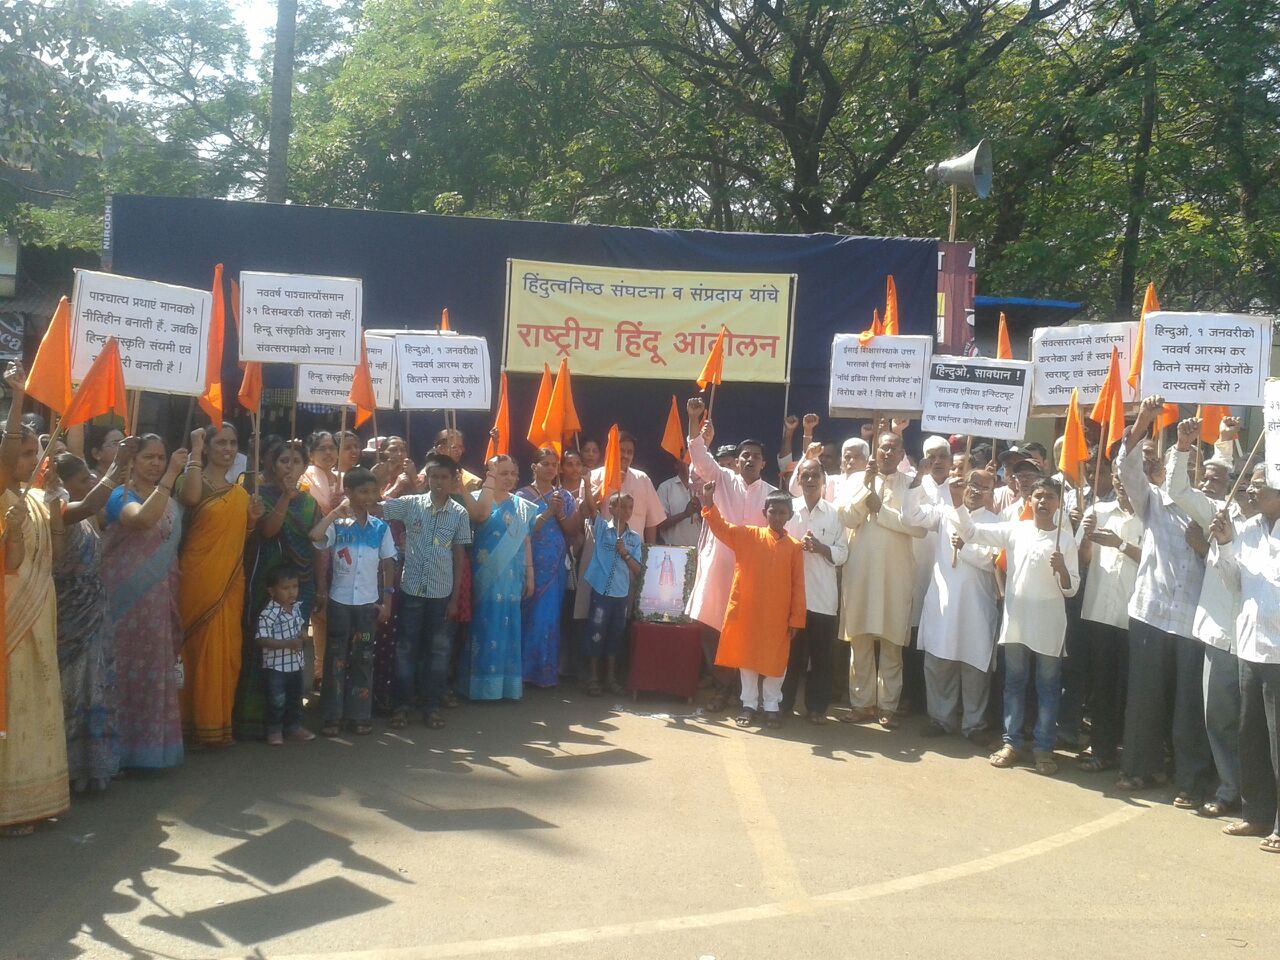 National Hindu movement demonstration at Ponda